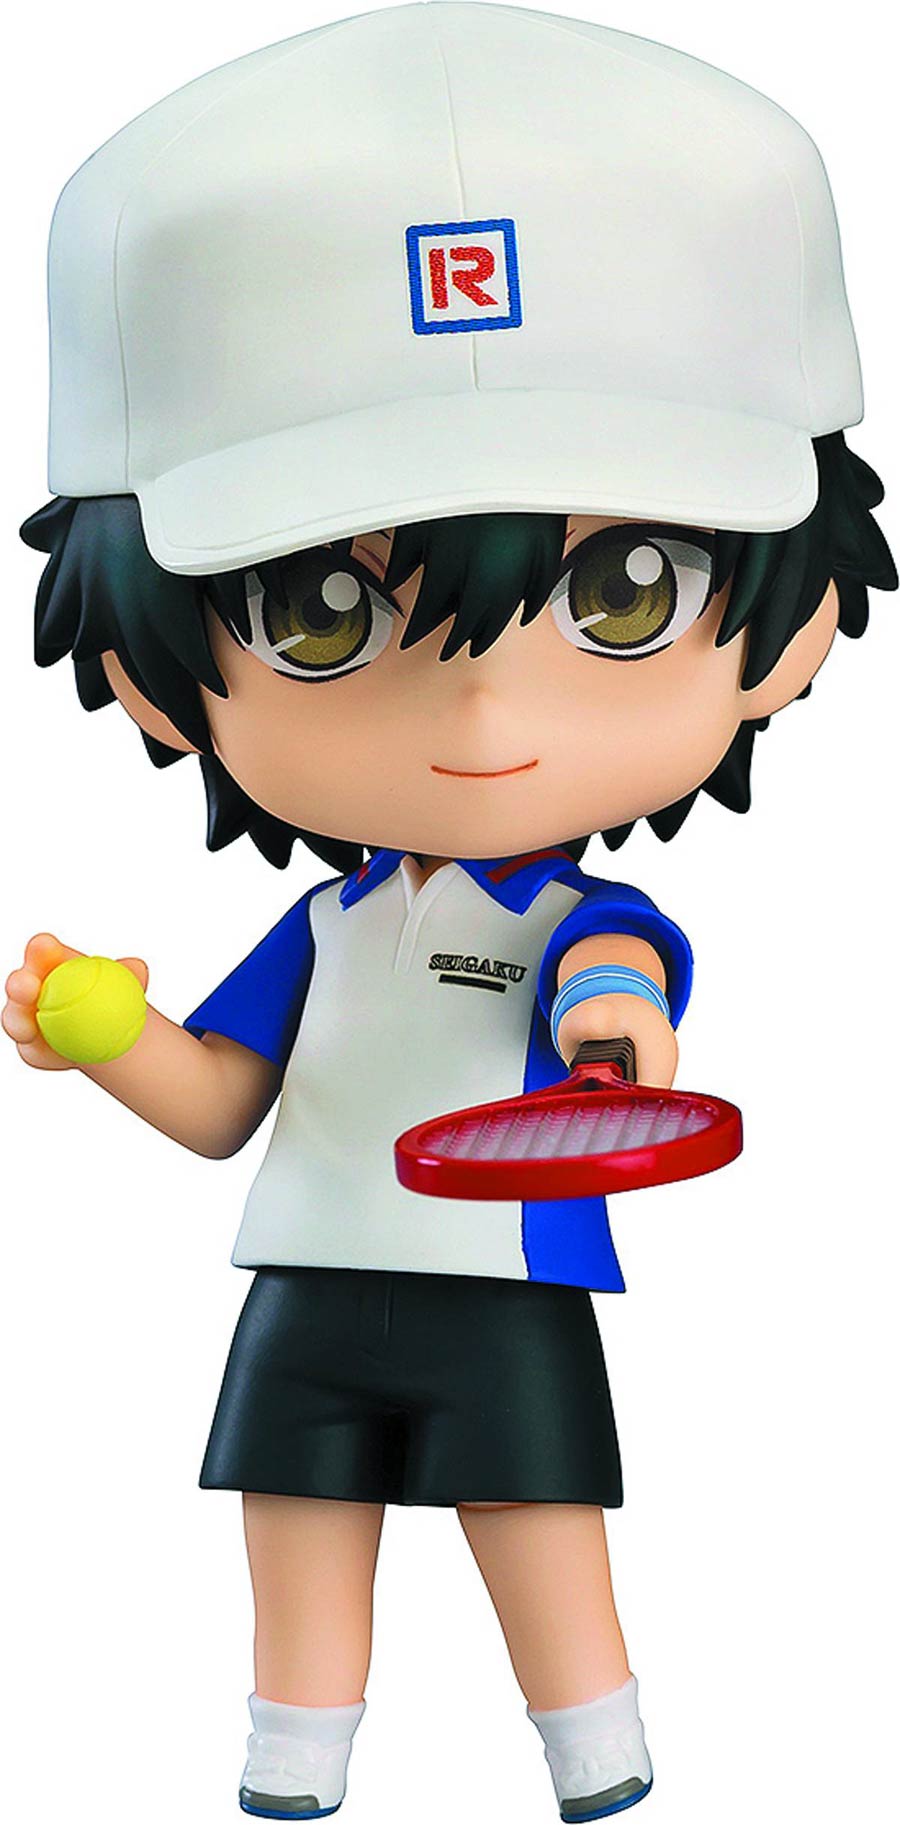 New Prince Of Tennis Ryoma Echizen Nendoroid